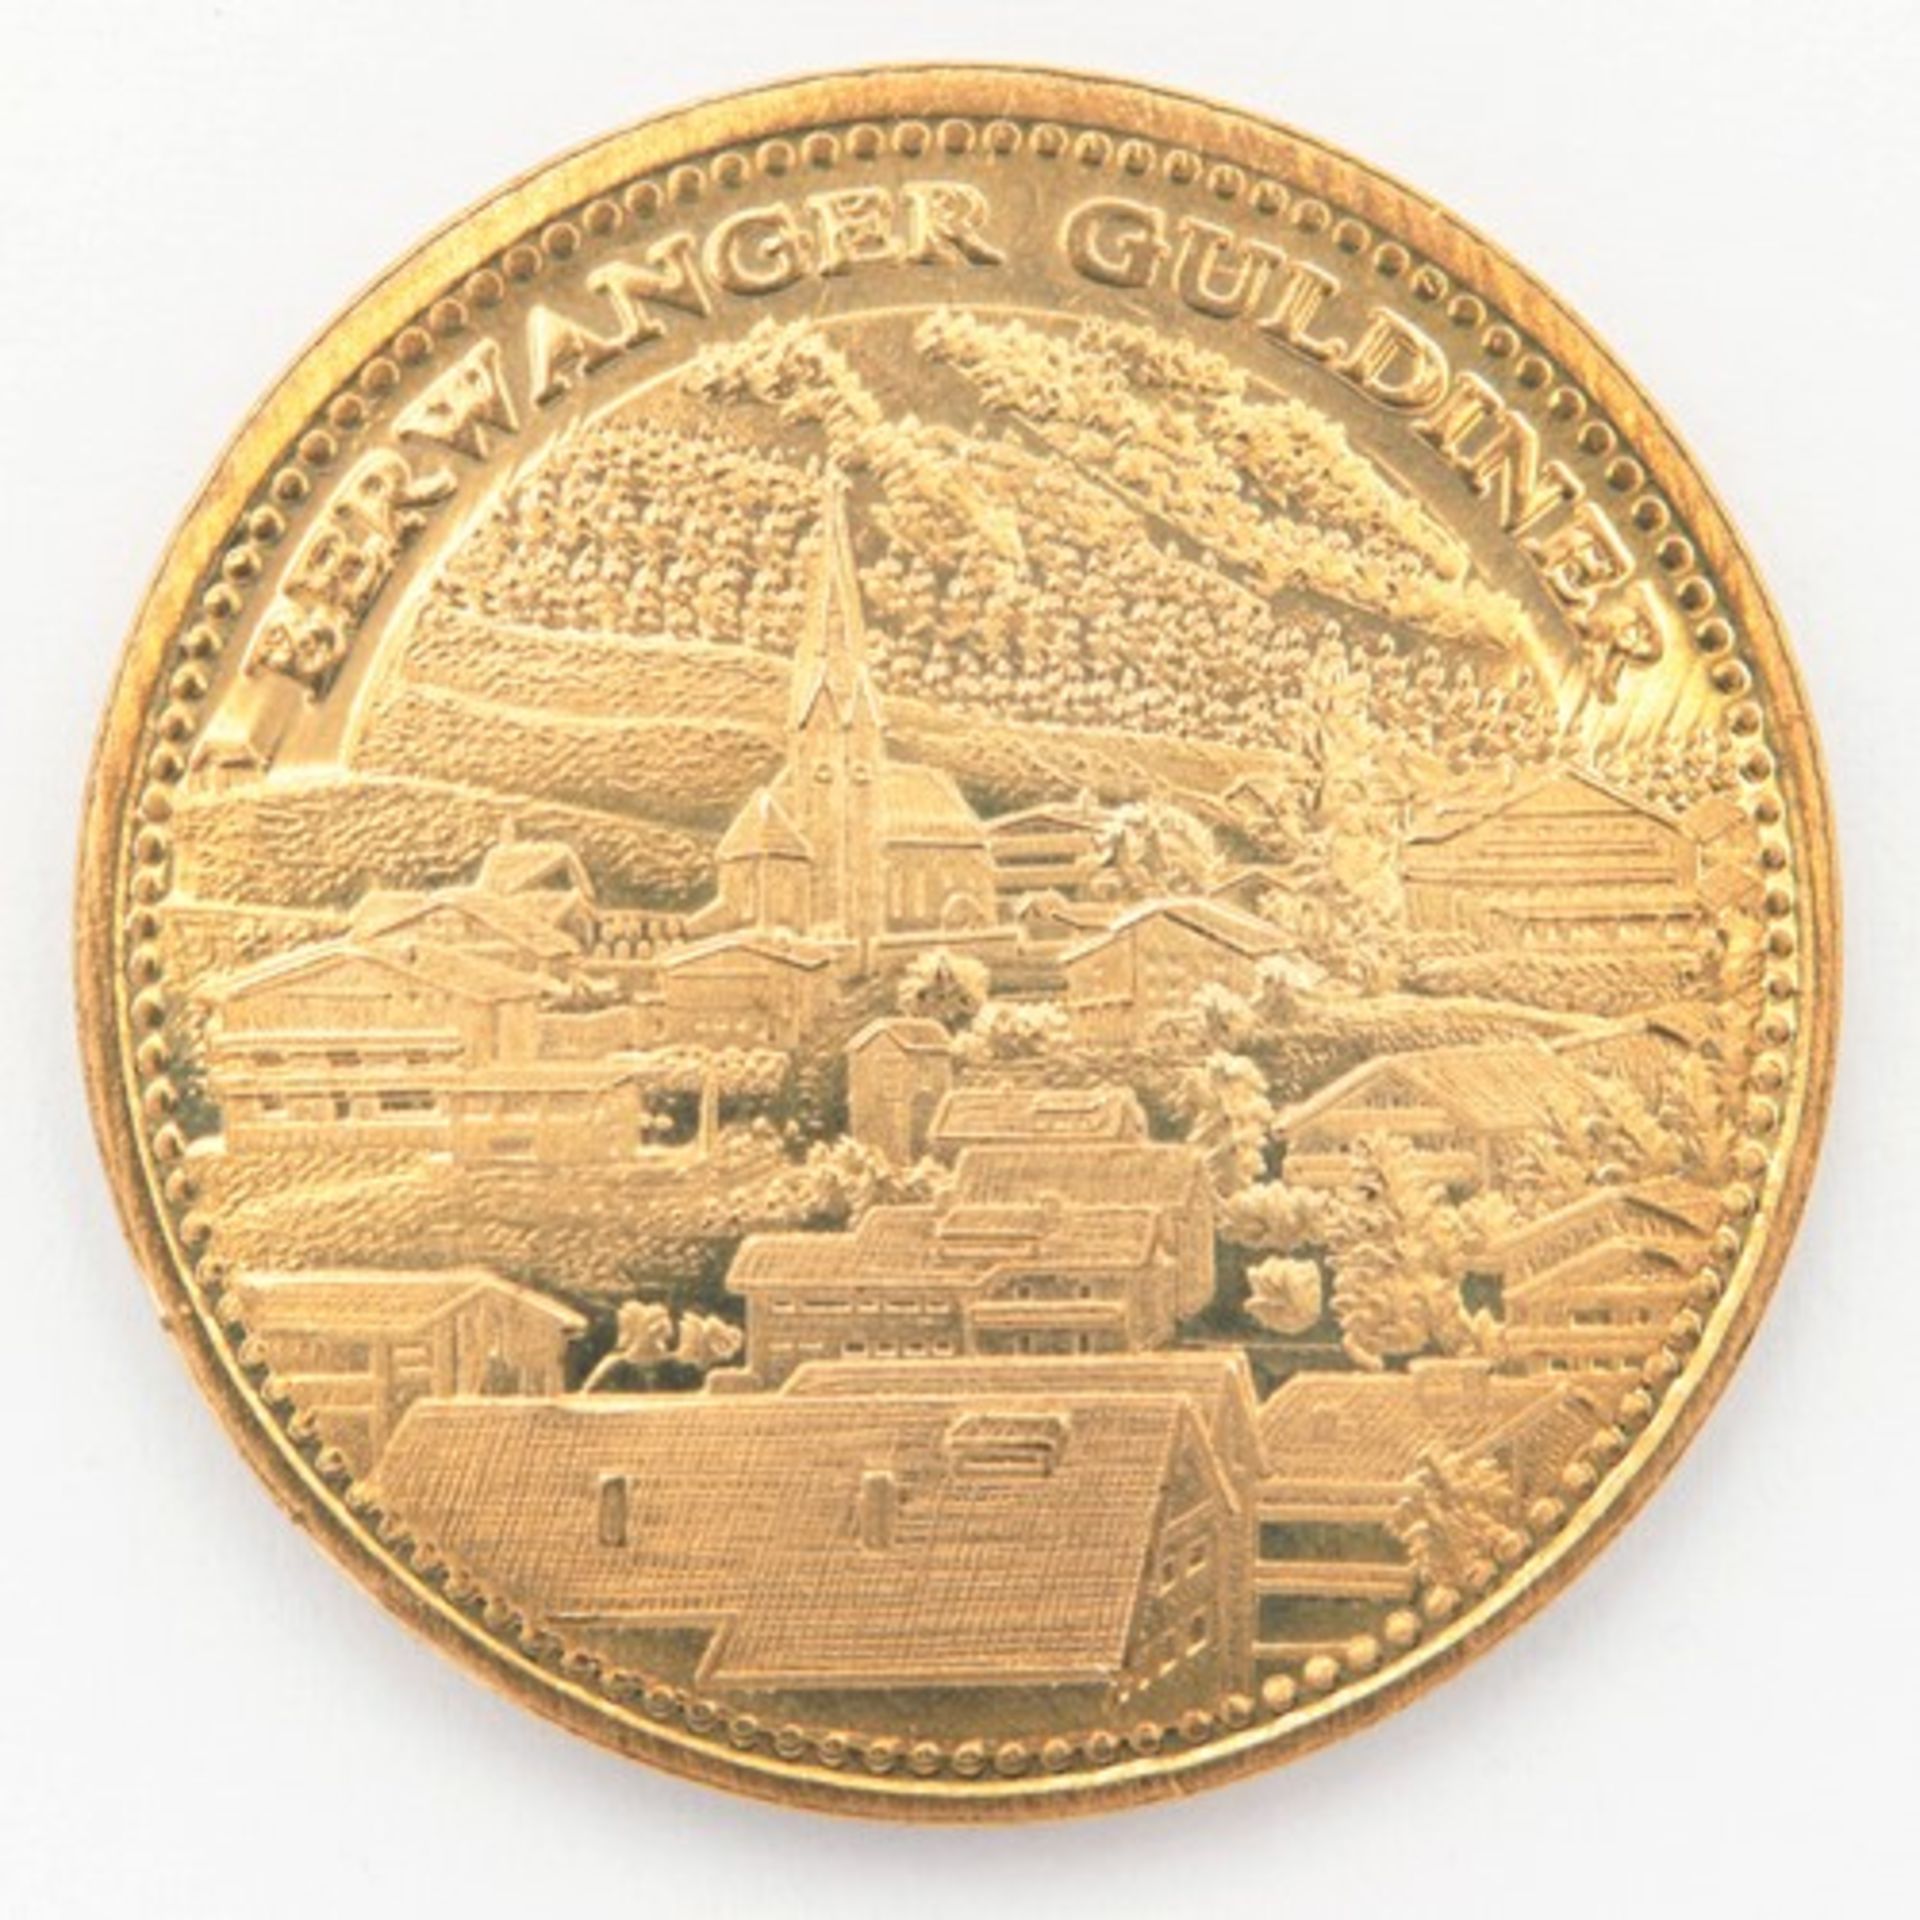 MedailleMillenium 2000, av. bez. Berwanger Guldiner mit Ansicht von Berwang, rv. bez. 2000 mit - Bild 2 aus 2